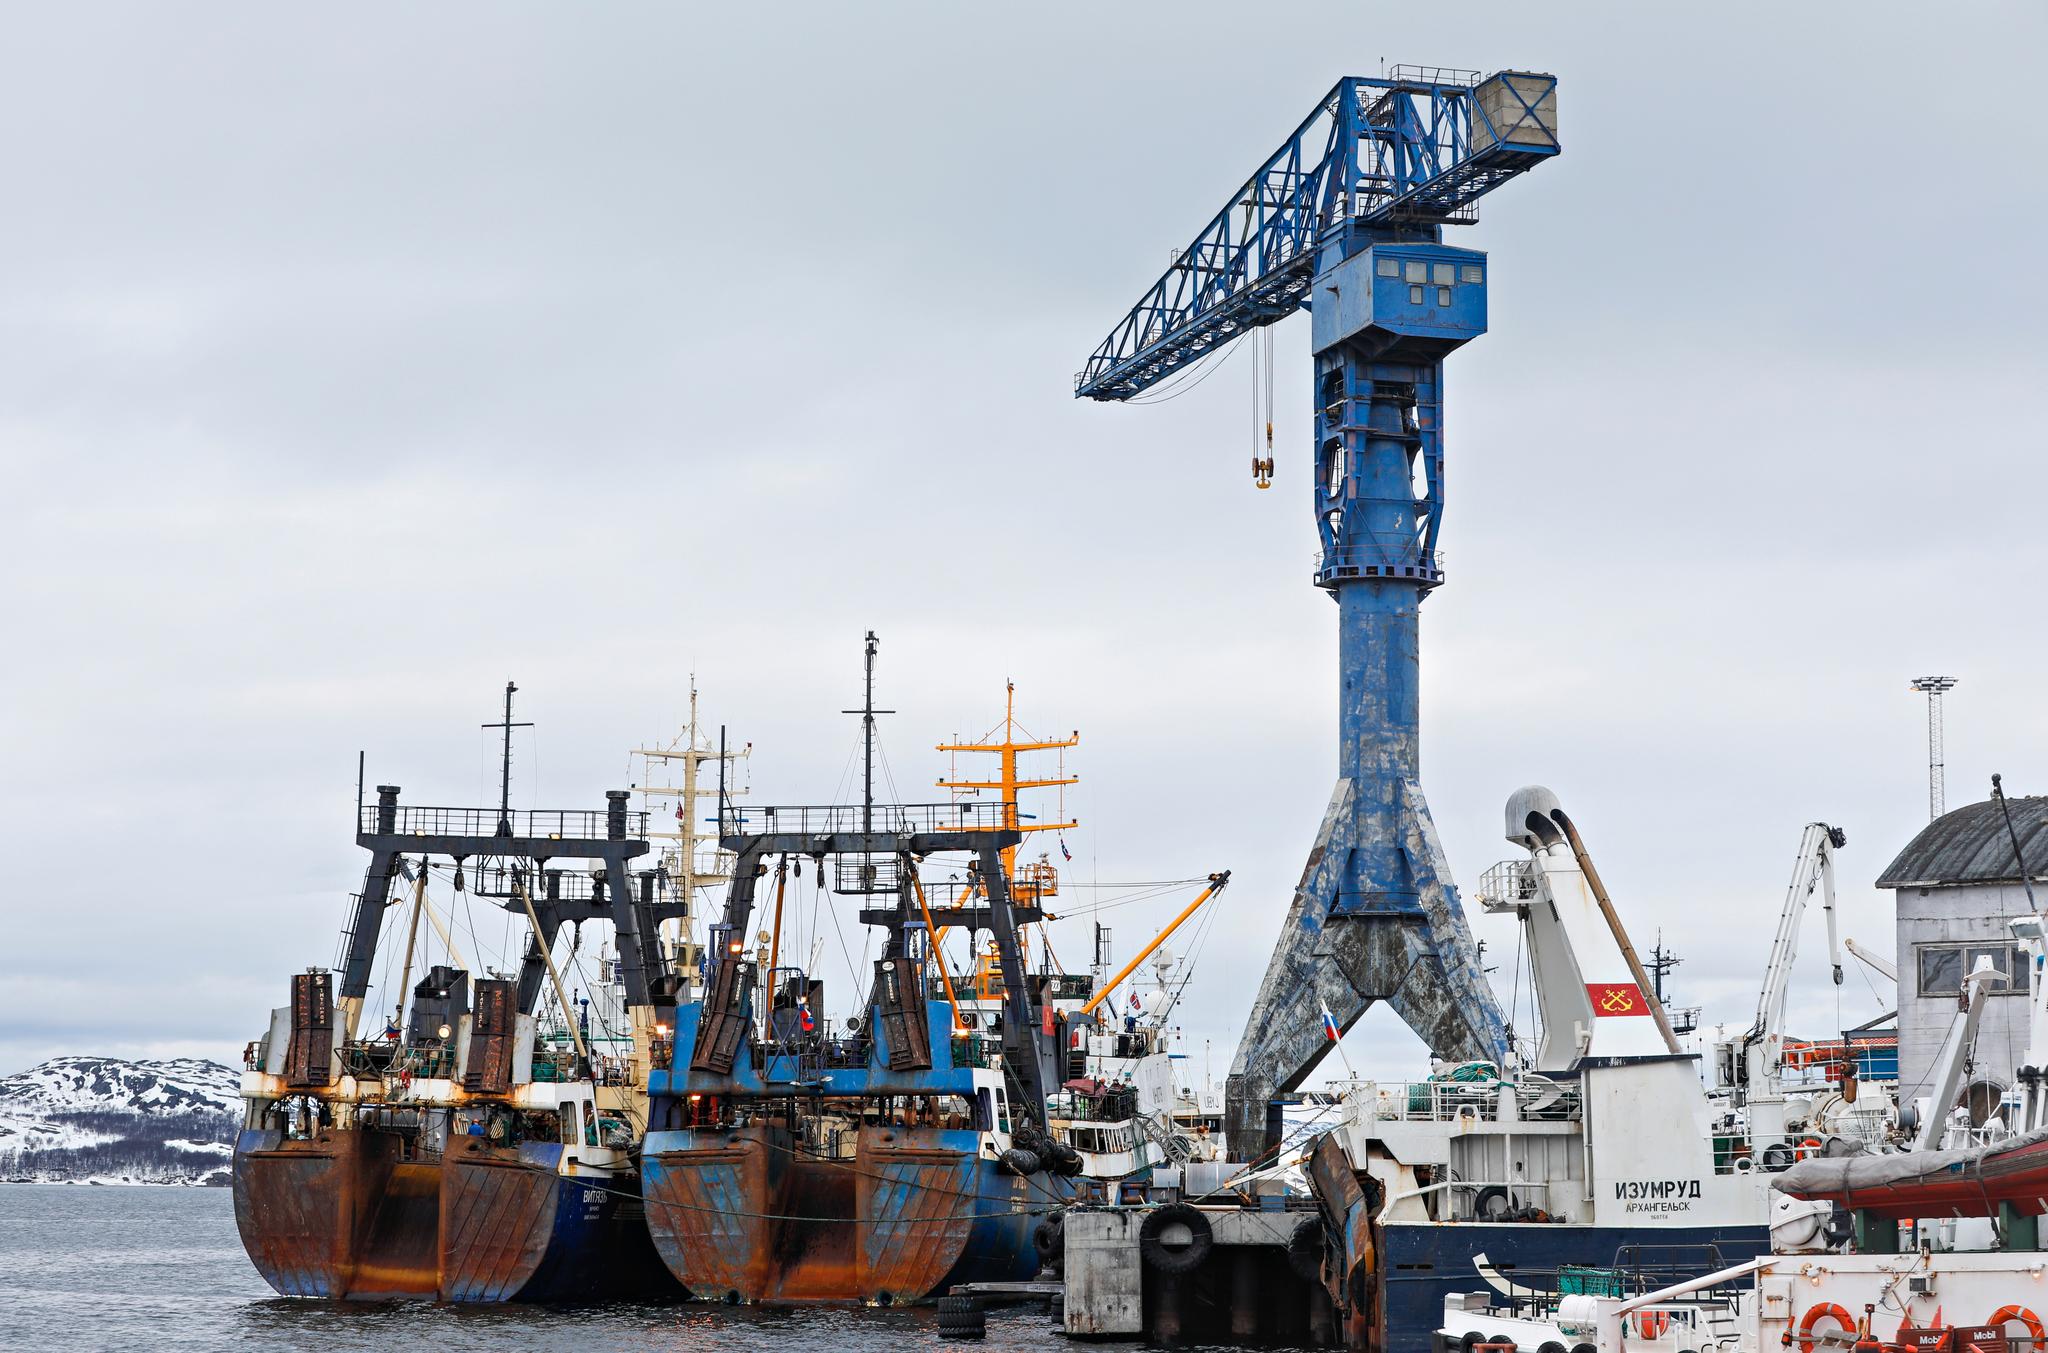 En rekke russiske trålere og fraktskip lå onsdag ved kai i Kirkenes. 70 prosent av inntektene til verftet Kimek kommer fra serviceoppdrag for den russiske fiskeflåten.